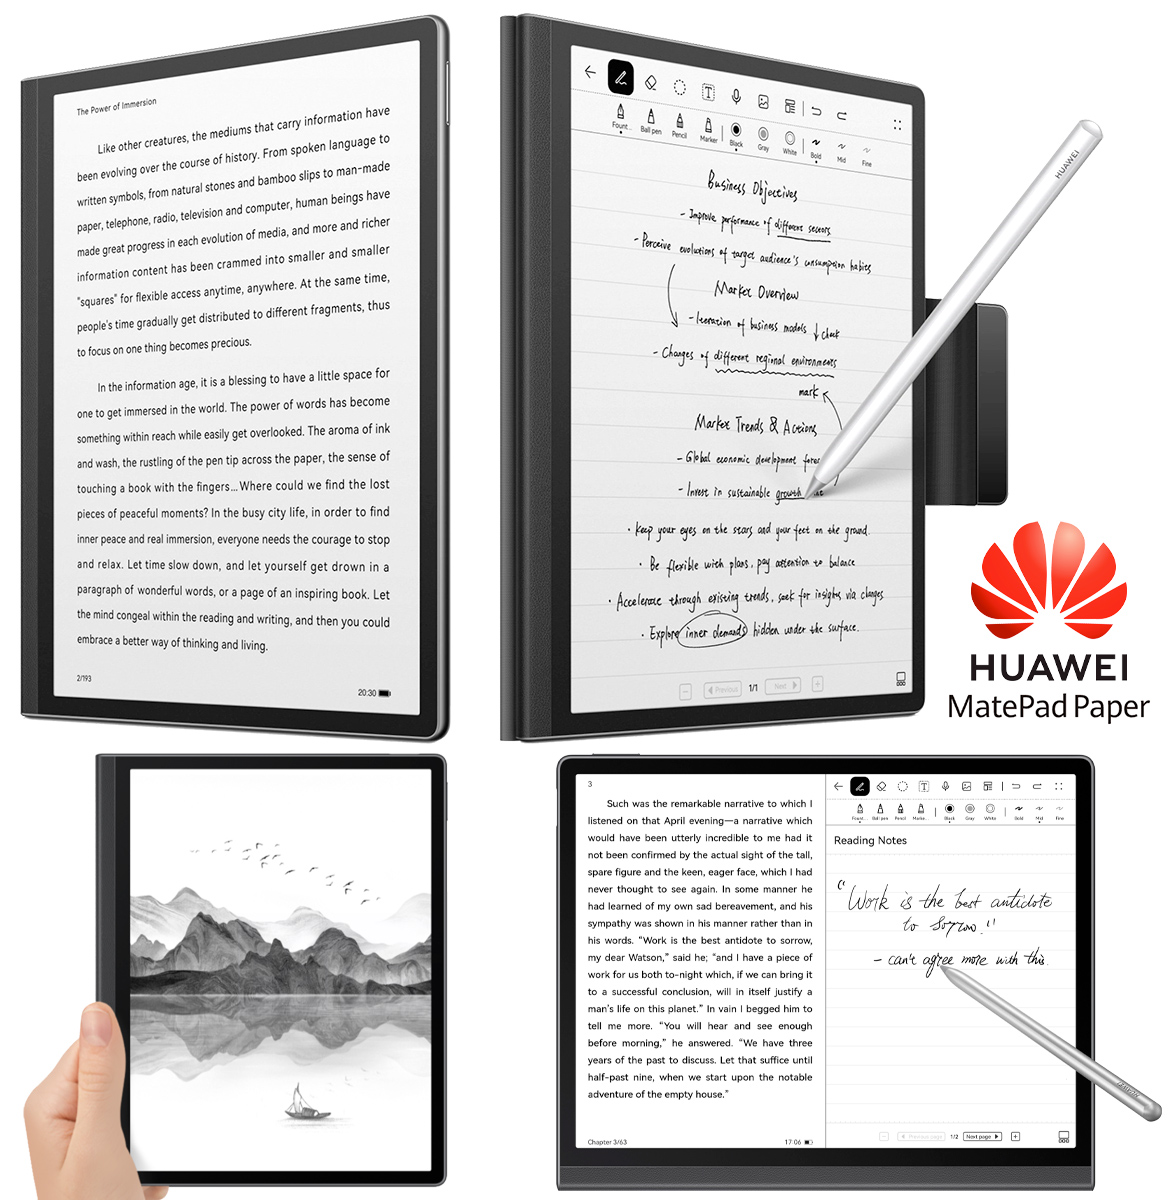 Huawei MatePad Paper, um e-reader com caneta stylus e gravador de voz